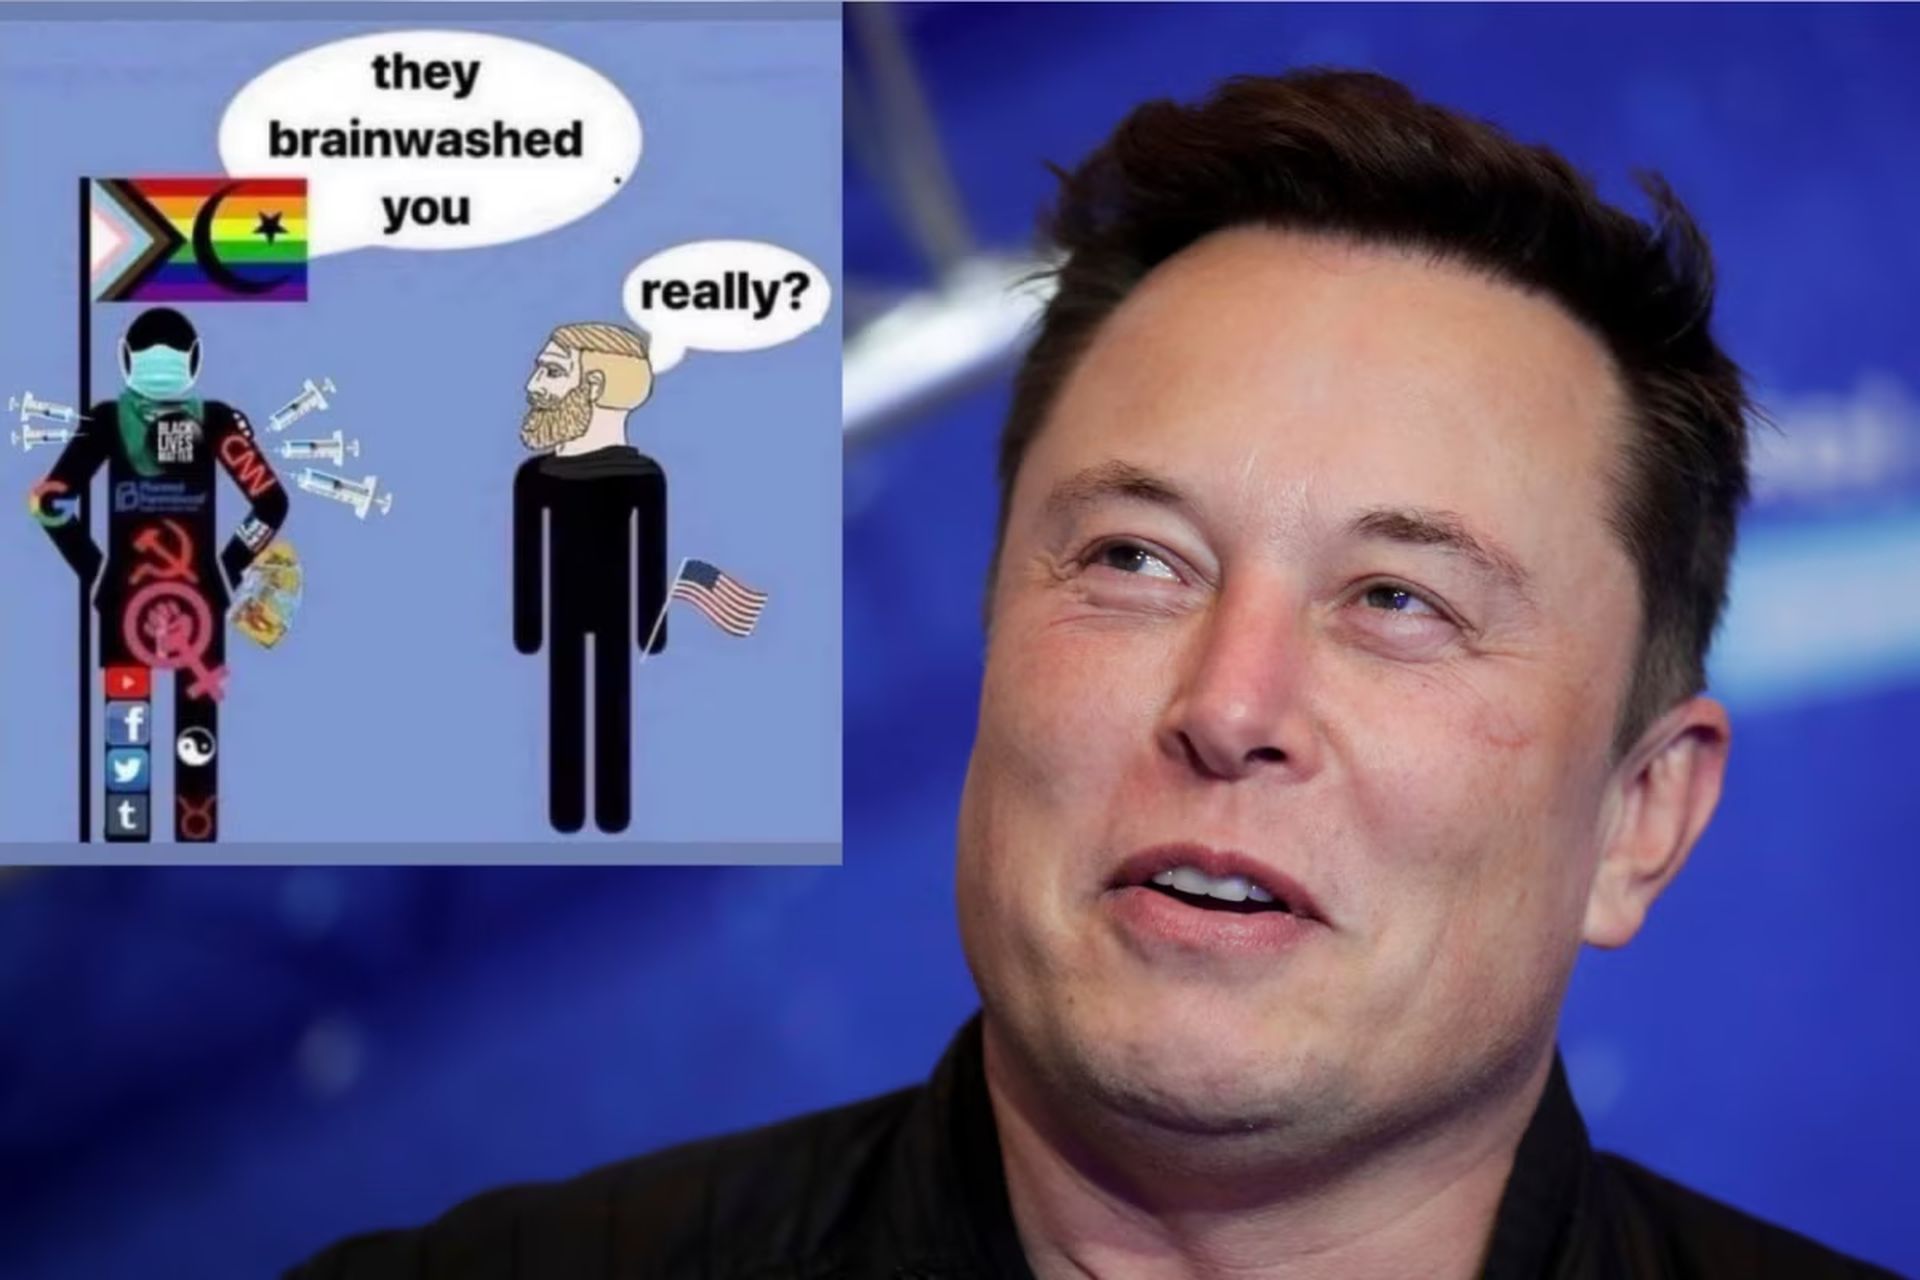 Il tweet sottoposto al lavaggio del cervello di Elon Musk provoca indignazione, ma lui insiste: “Io non sono cis, tu lo sei”